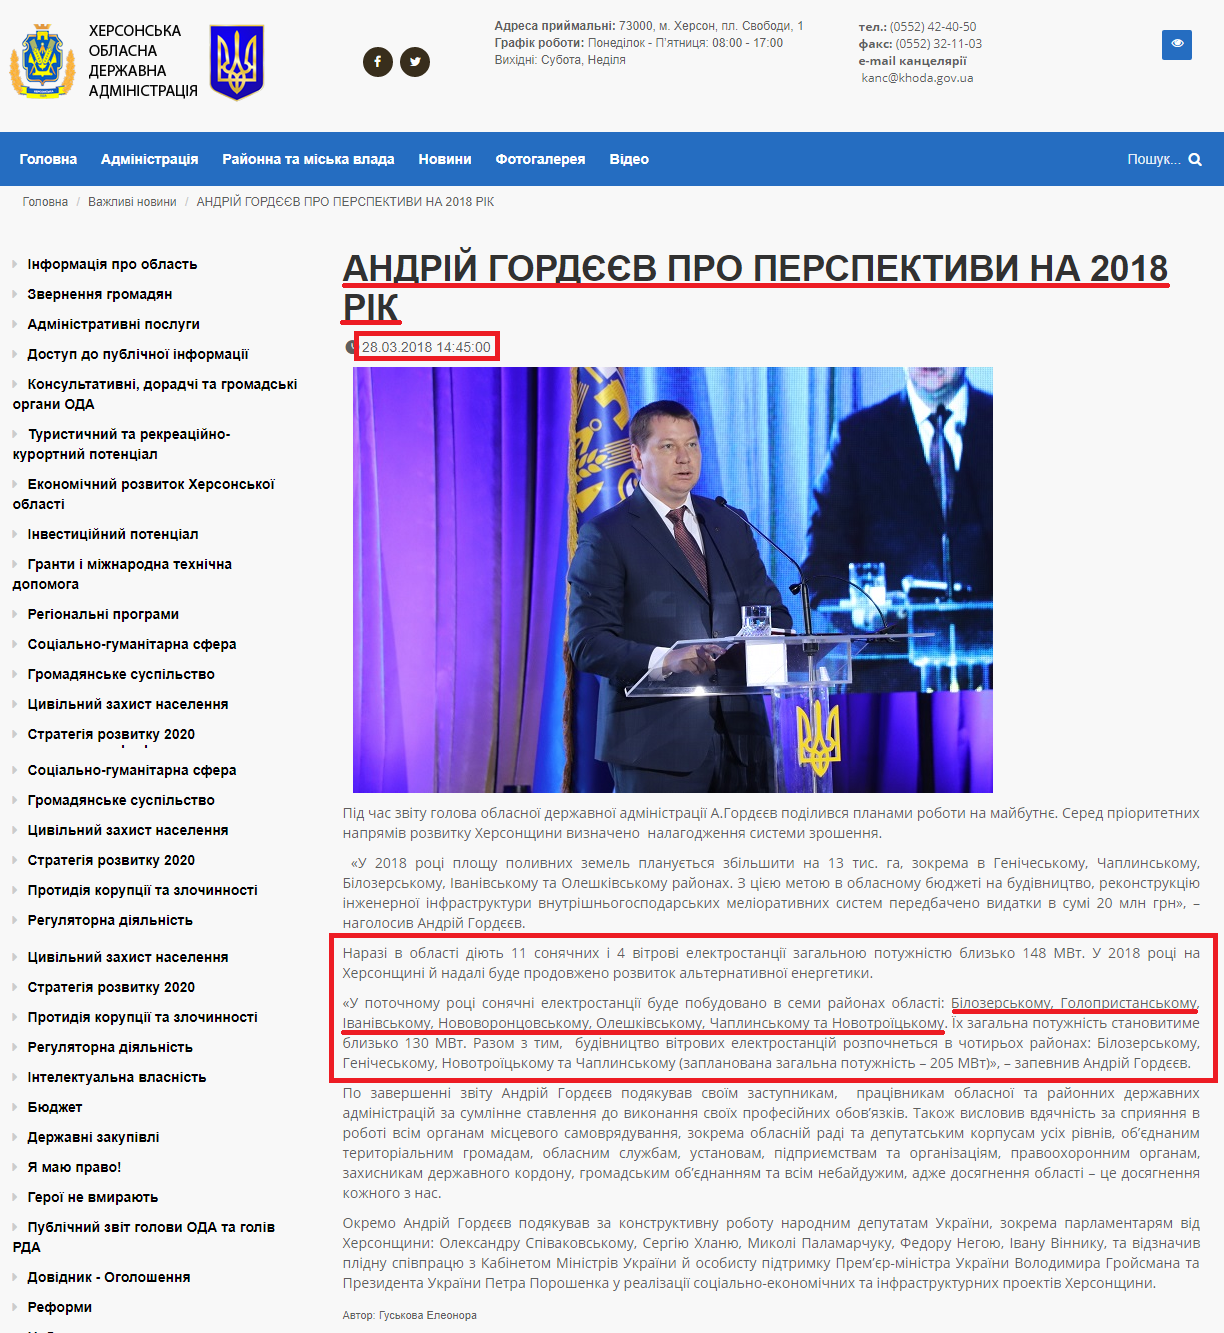 http://khoda.gov.ua/andr%D1%96j-gord%D1%94%D1%94v-pro-perspektivi-na-2018-r%D1%96k